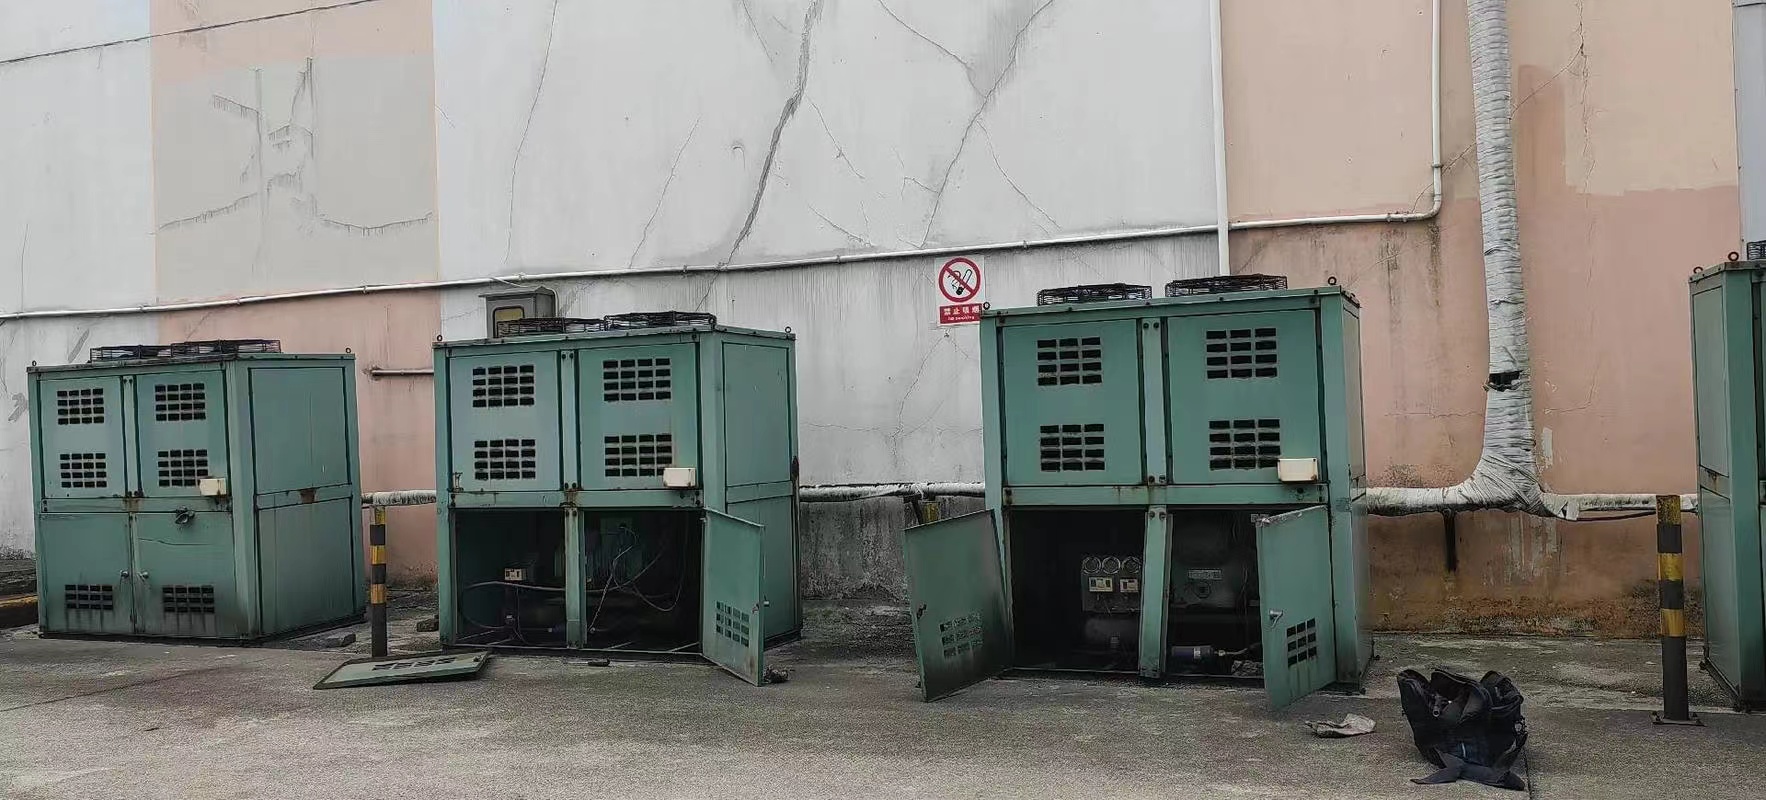 枣庄薛城区晶雪冷库板拆除回收工厂线拆除